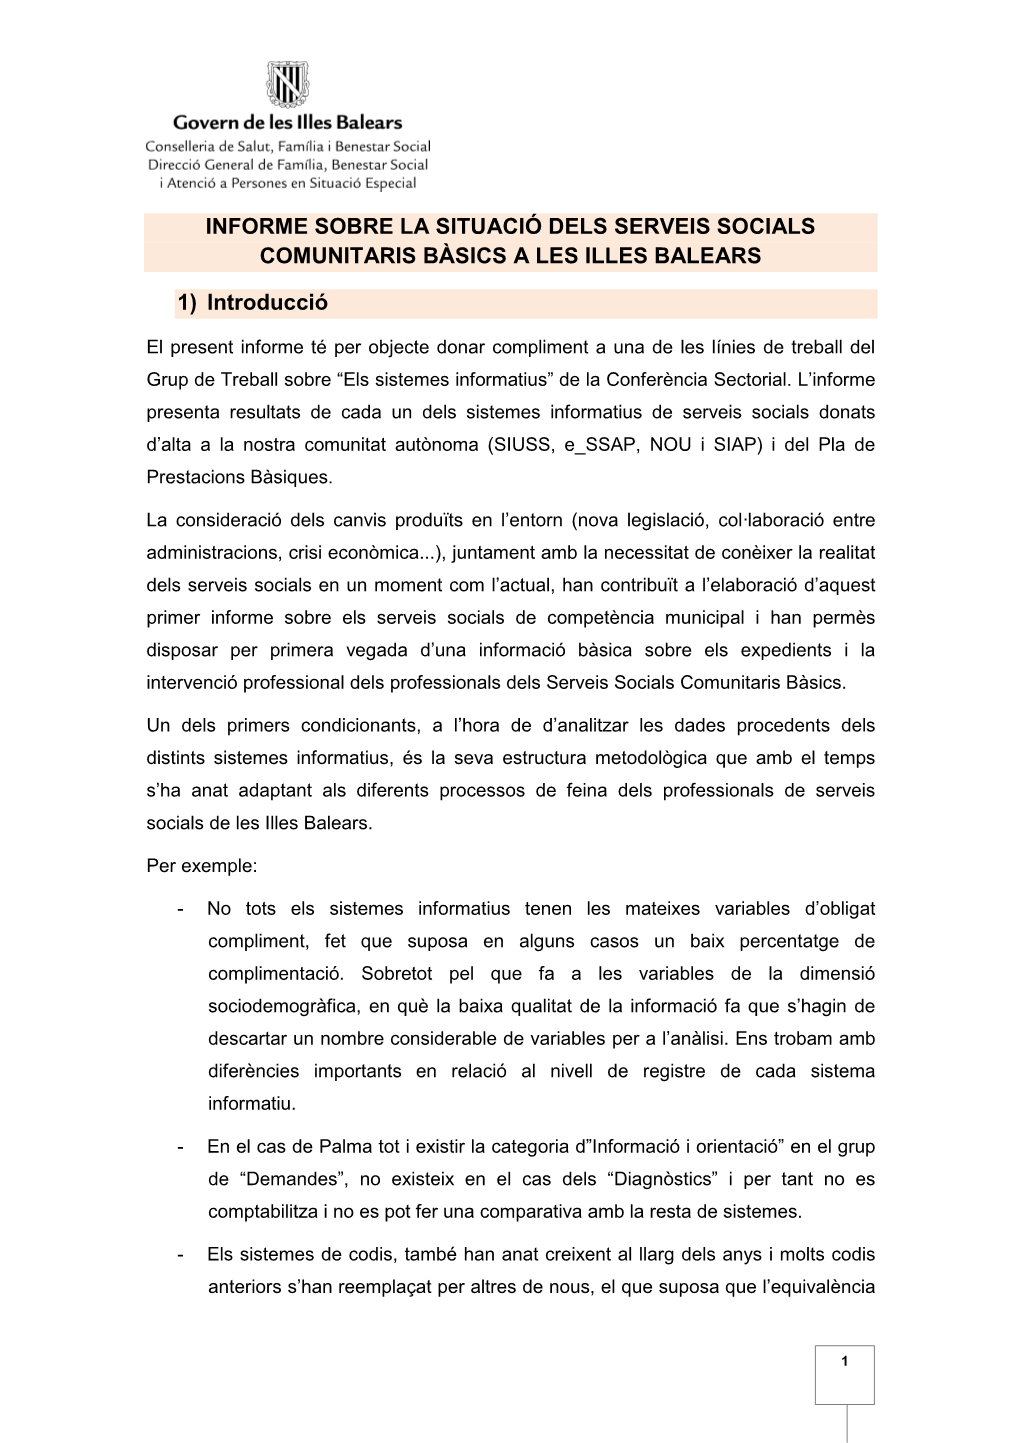 Informe Sobre La Situació Dels Serveis Socials Comunitaris Bàsics a Les Illes Balears